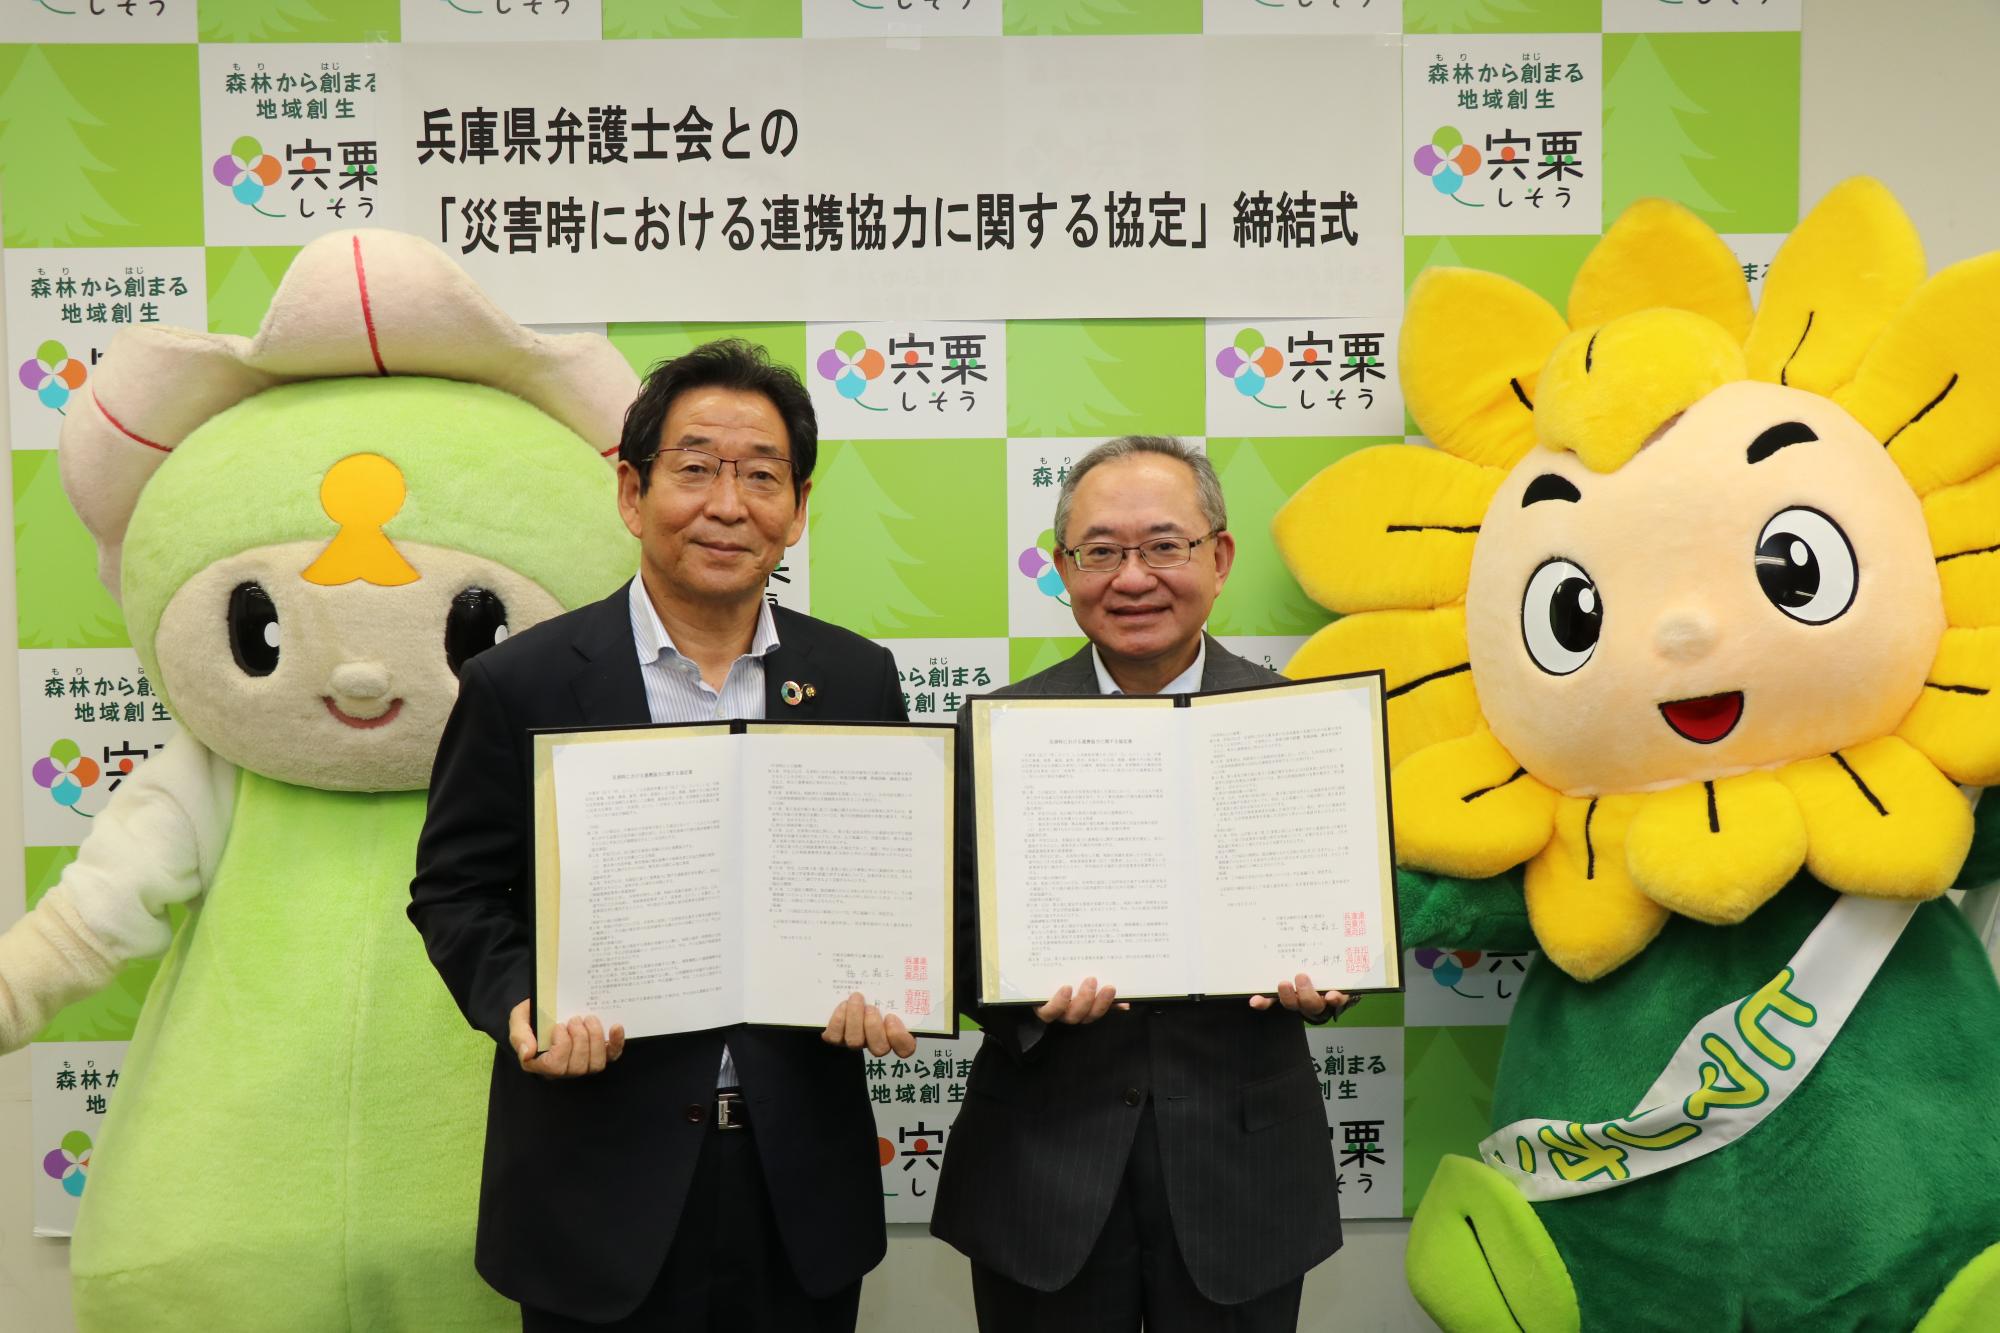 福元市長と兵庫県弁護士会の中上会長が協定書を持って並んでいる写真